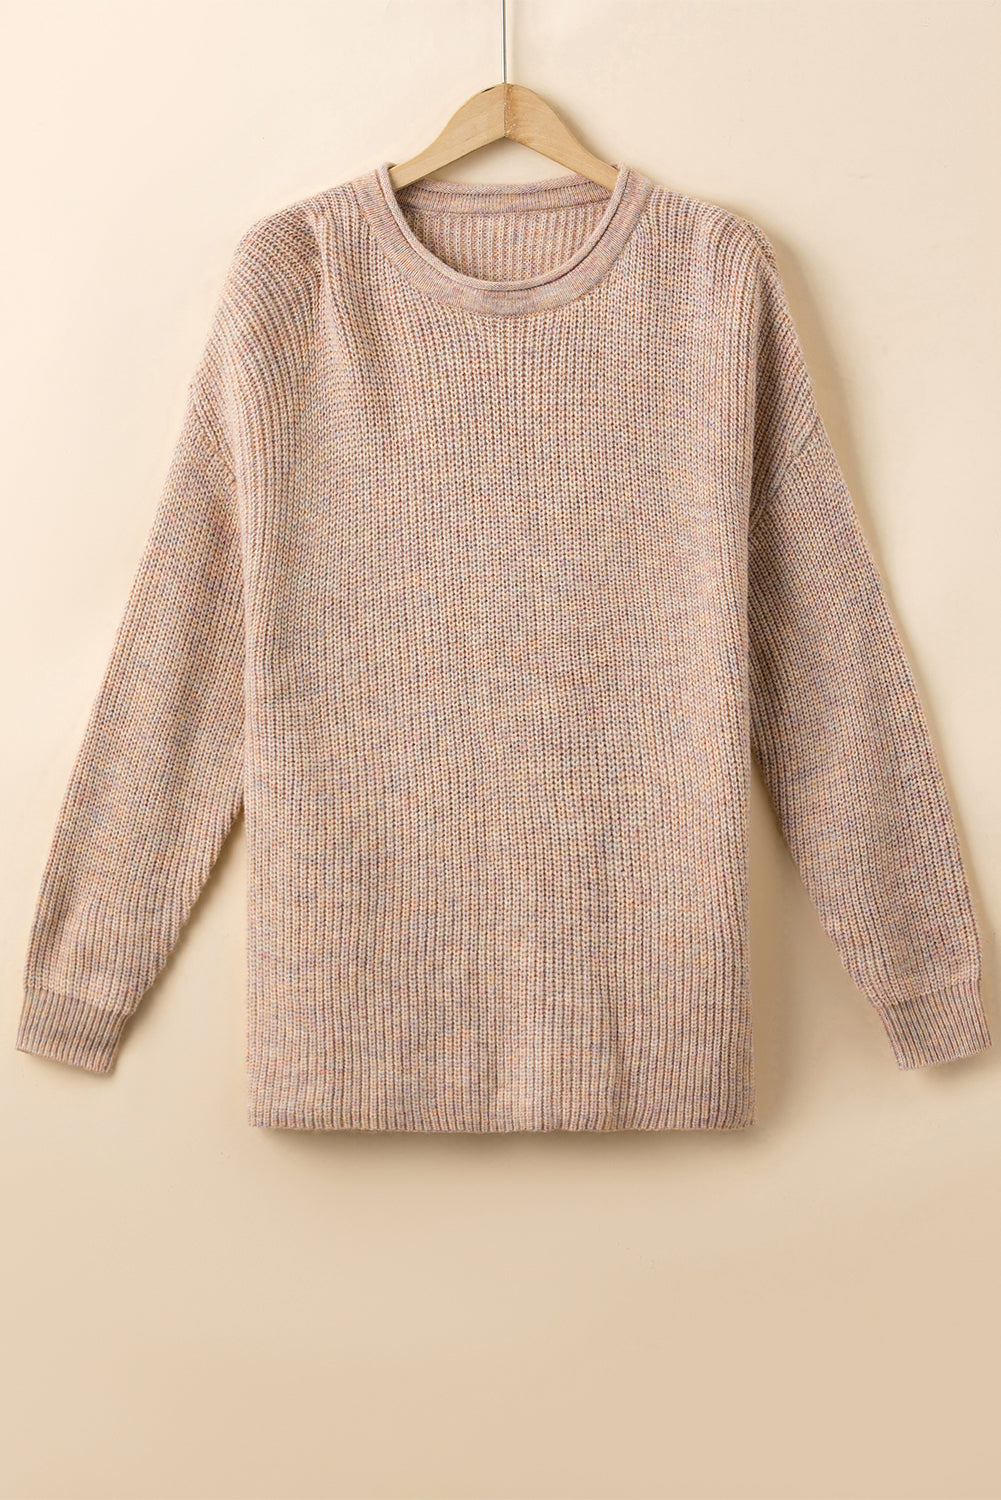 Višebojni smotani pulover s okruglim izrezom na spuštena ramena